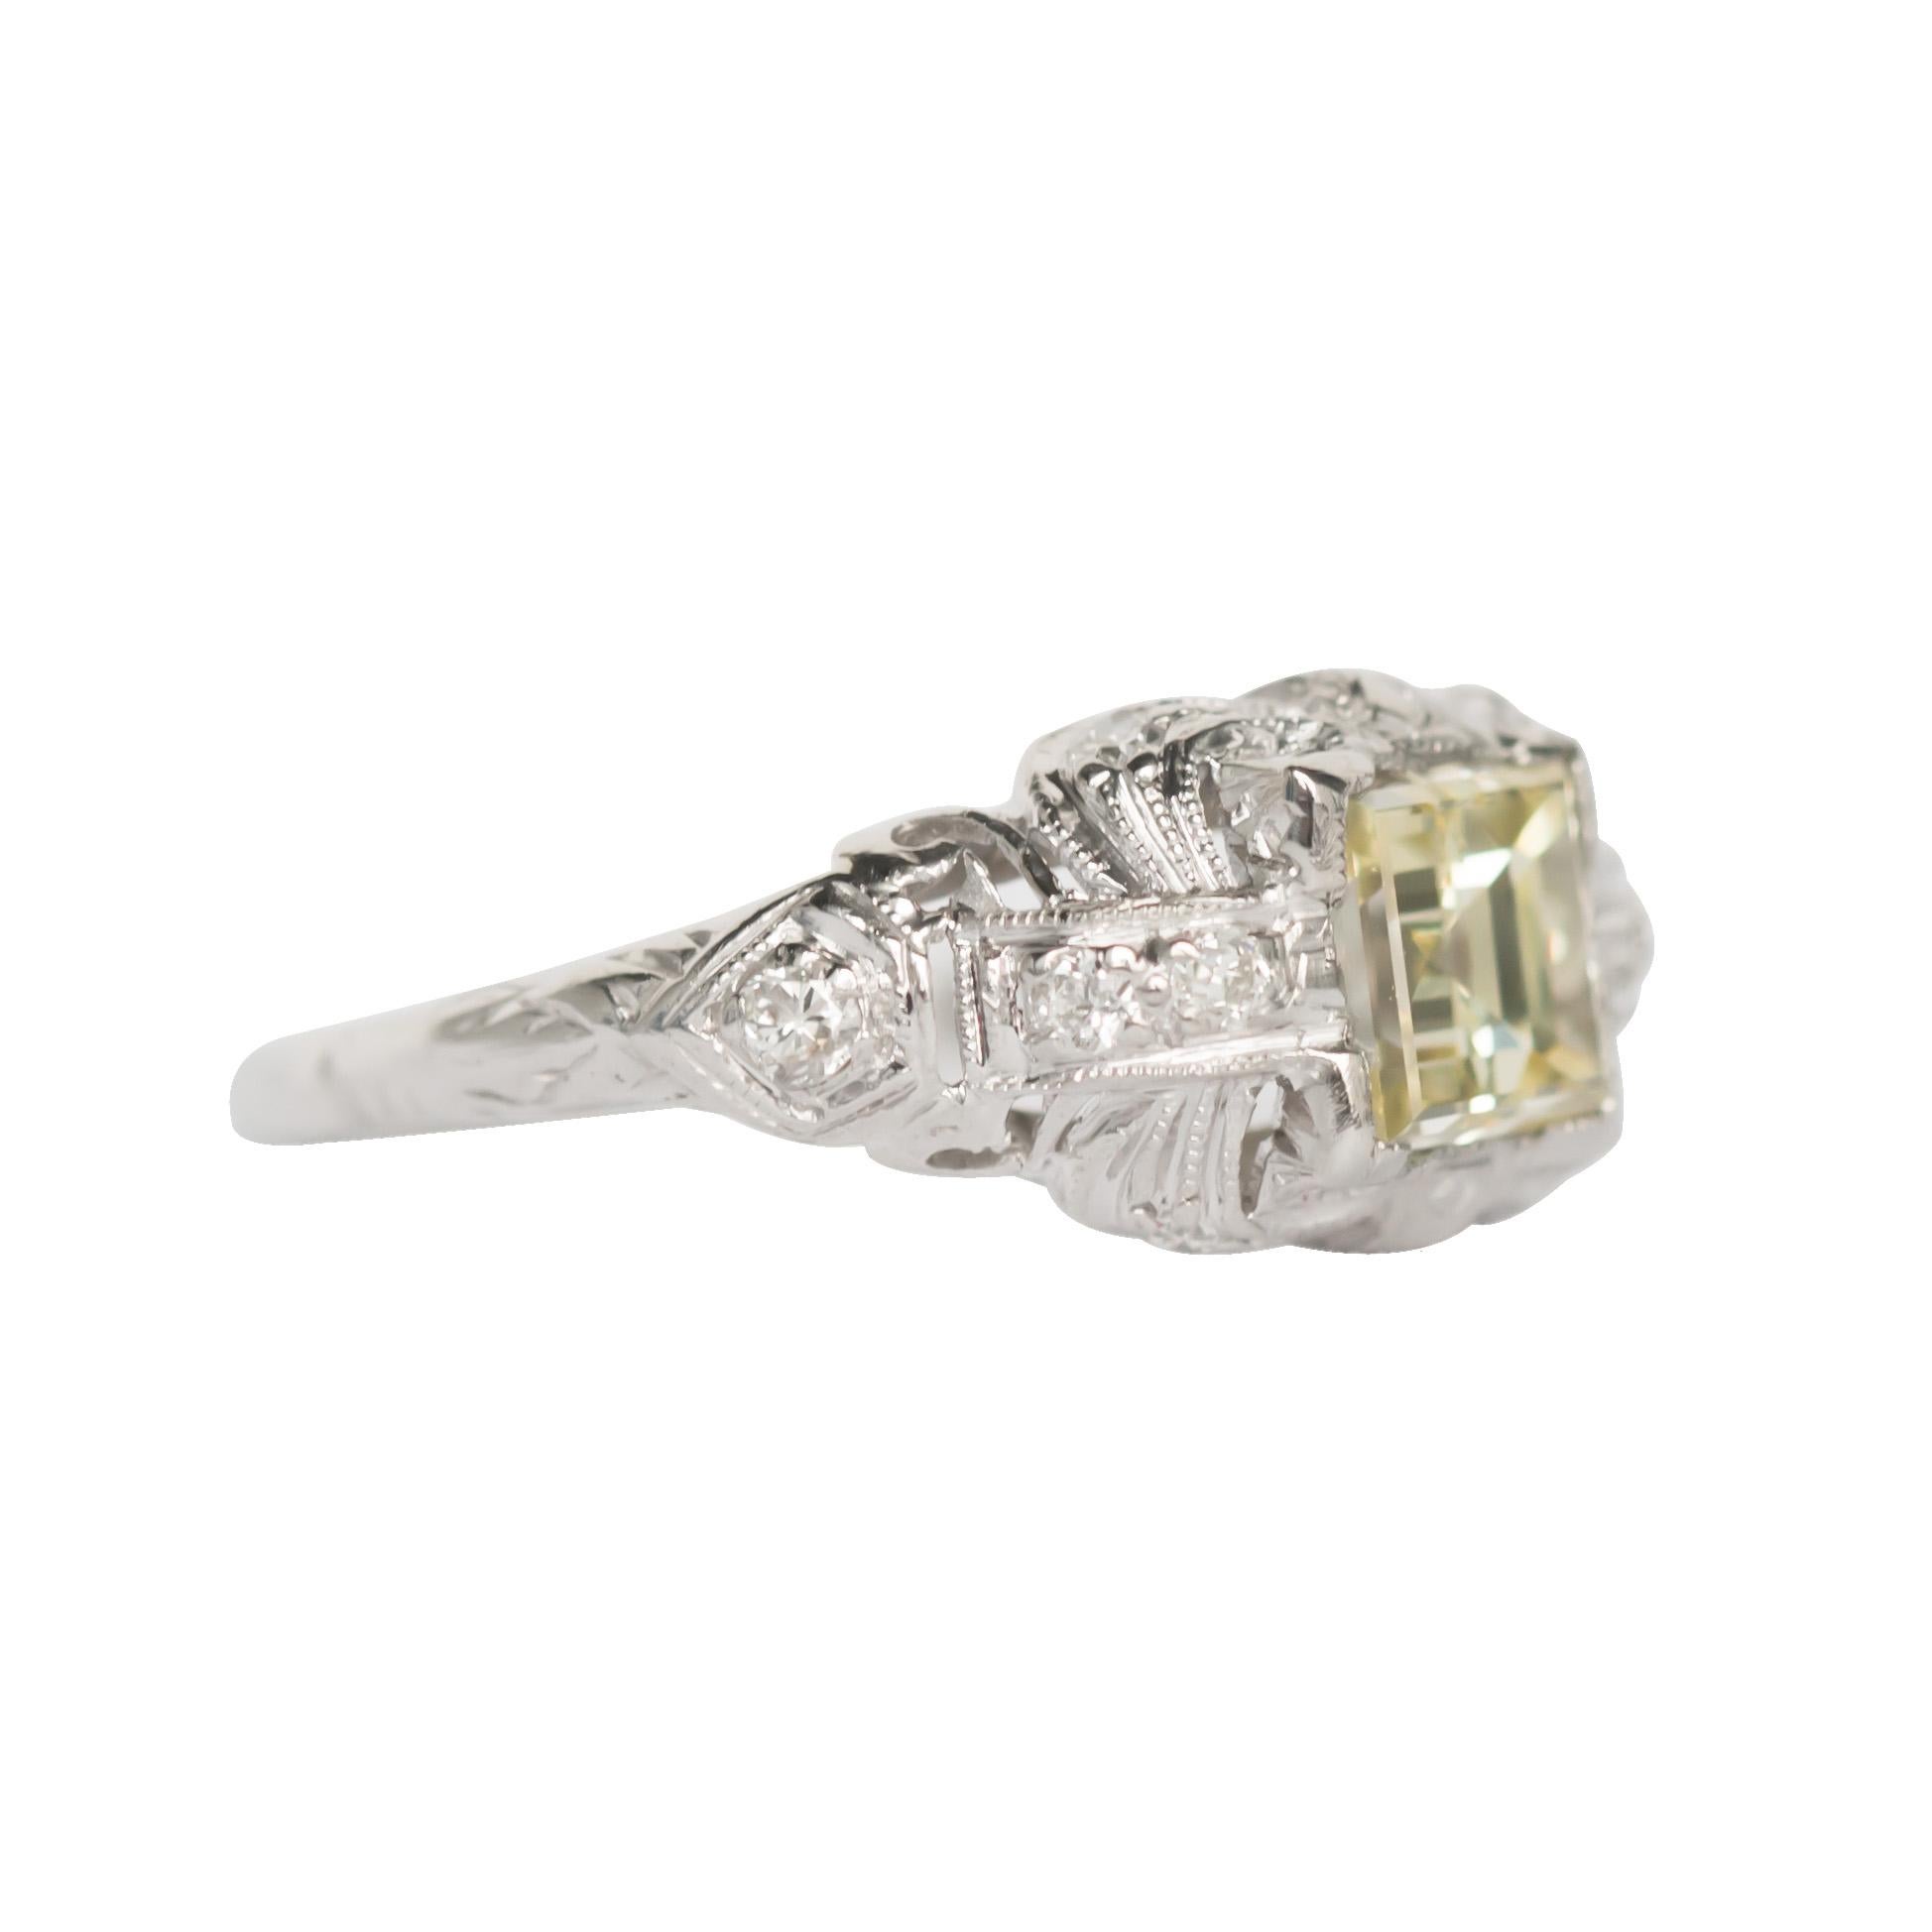 GIA Certified 1.08 Carat Diamond Platinum Engagement Ring (Edwardian)